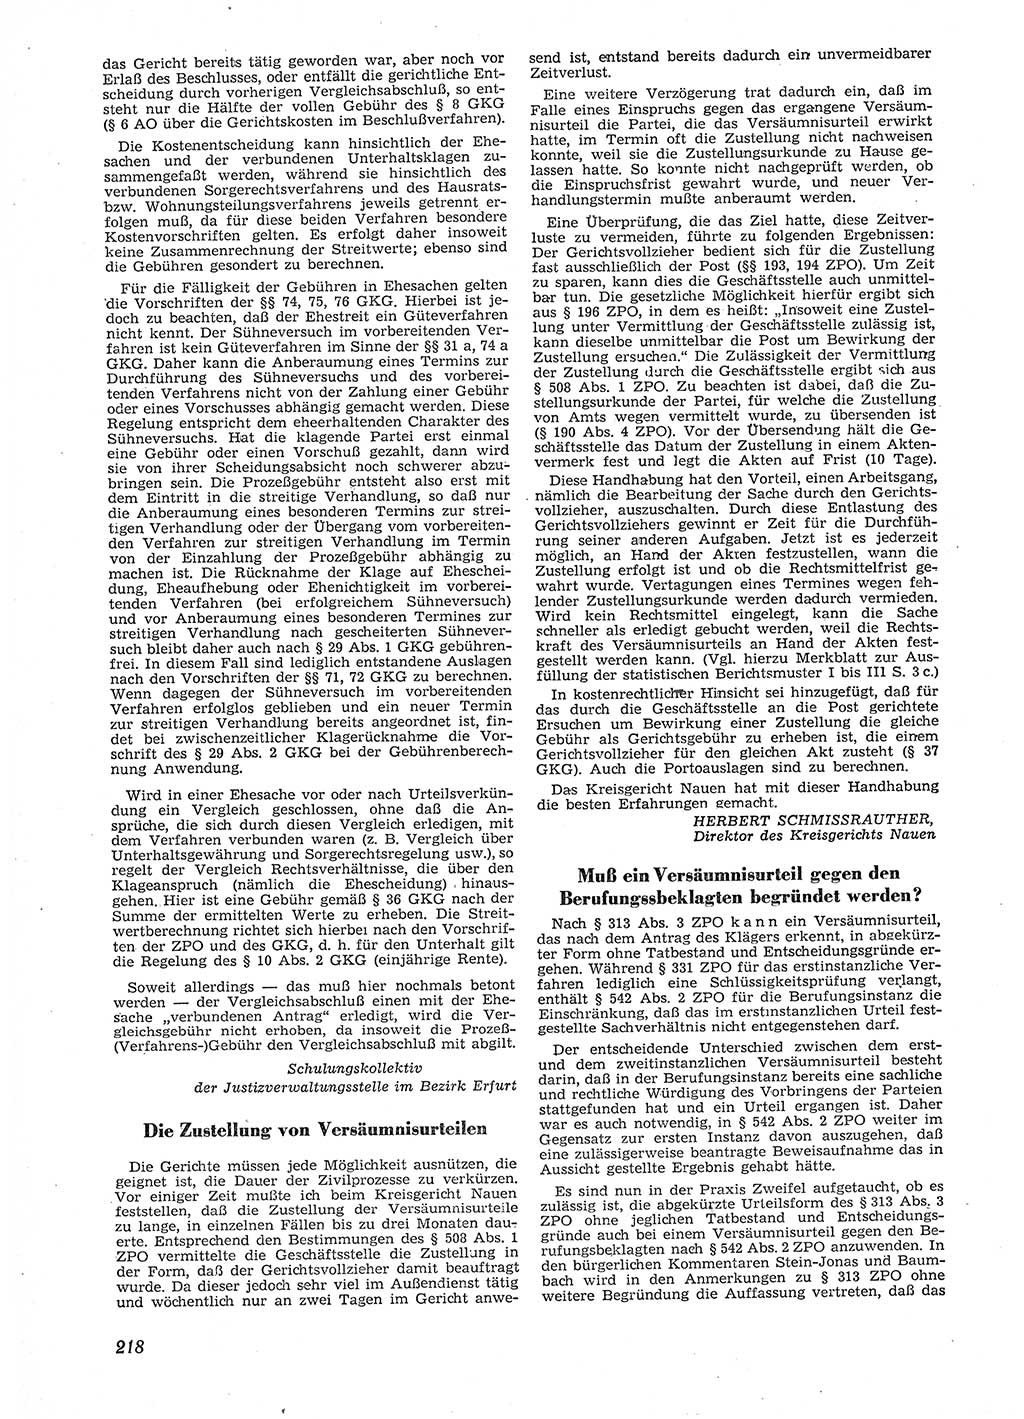 Neue Justiz (NJ), Zeitschrift für Recht und Rechtswissenschaft [Deutsche Demokratische Republik (DDR)], 9. Jahrgang 1955, Seite 218 (NJ DDR 1955, S. 218)